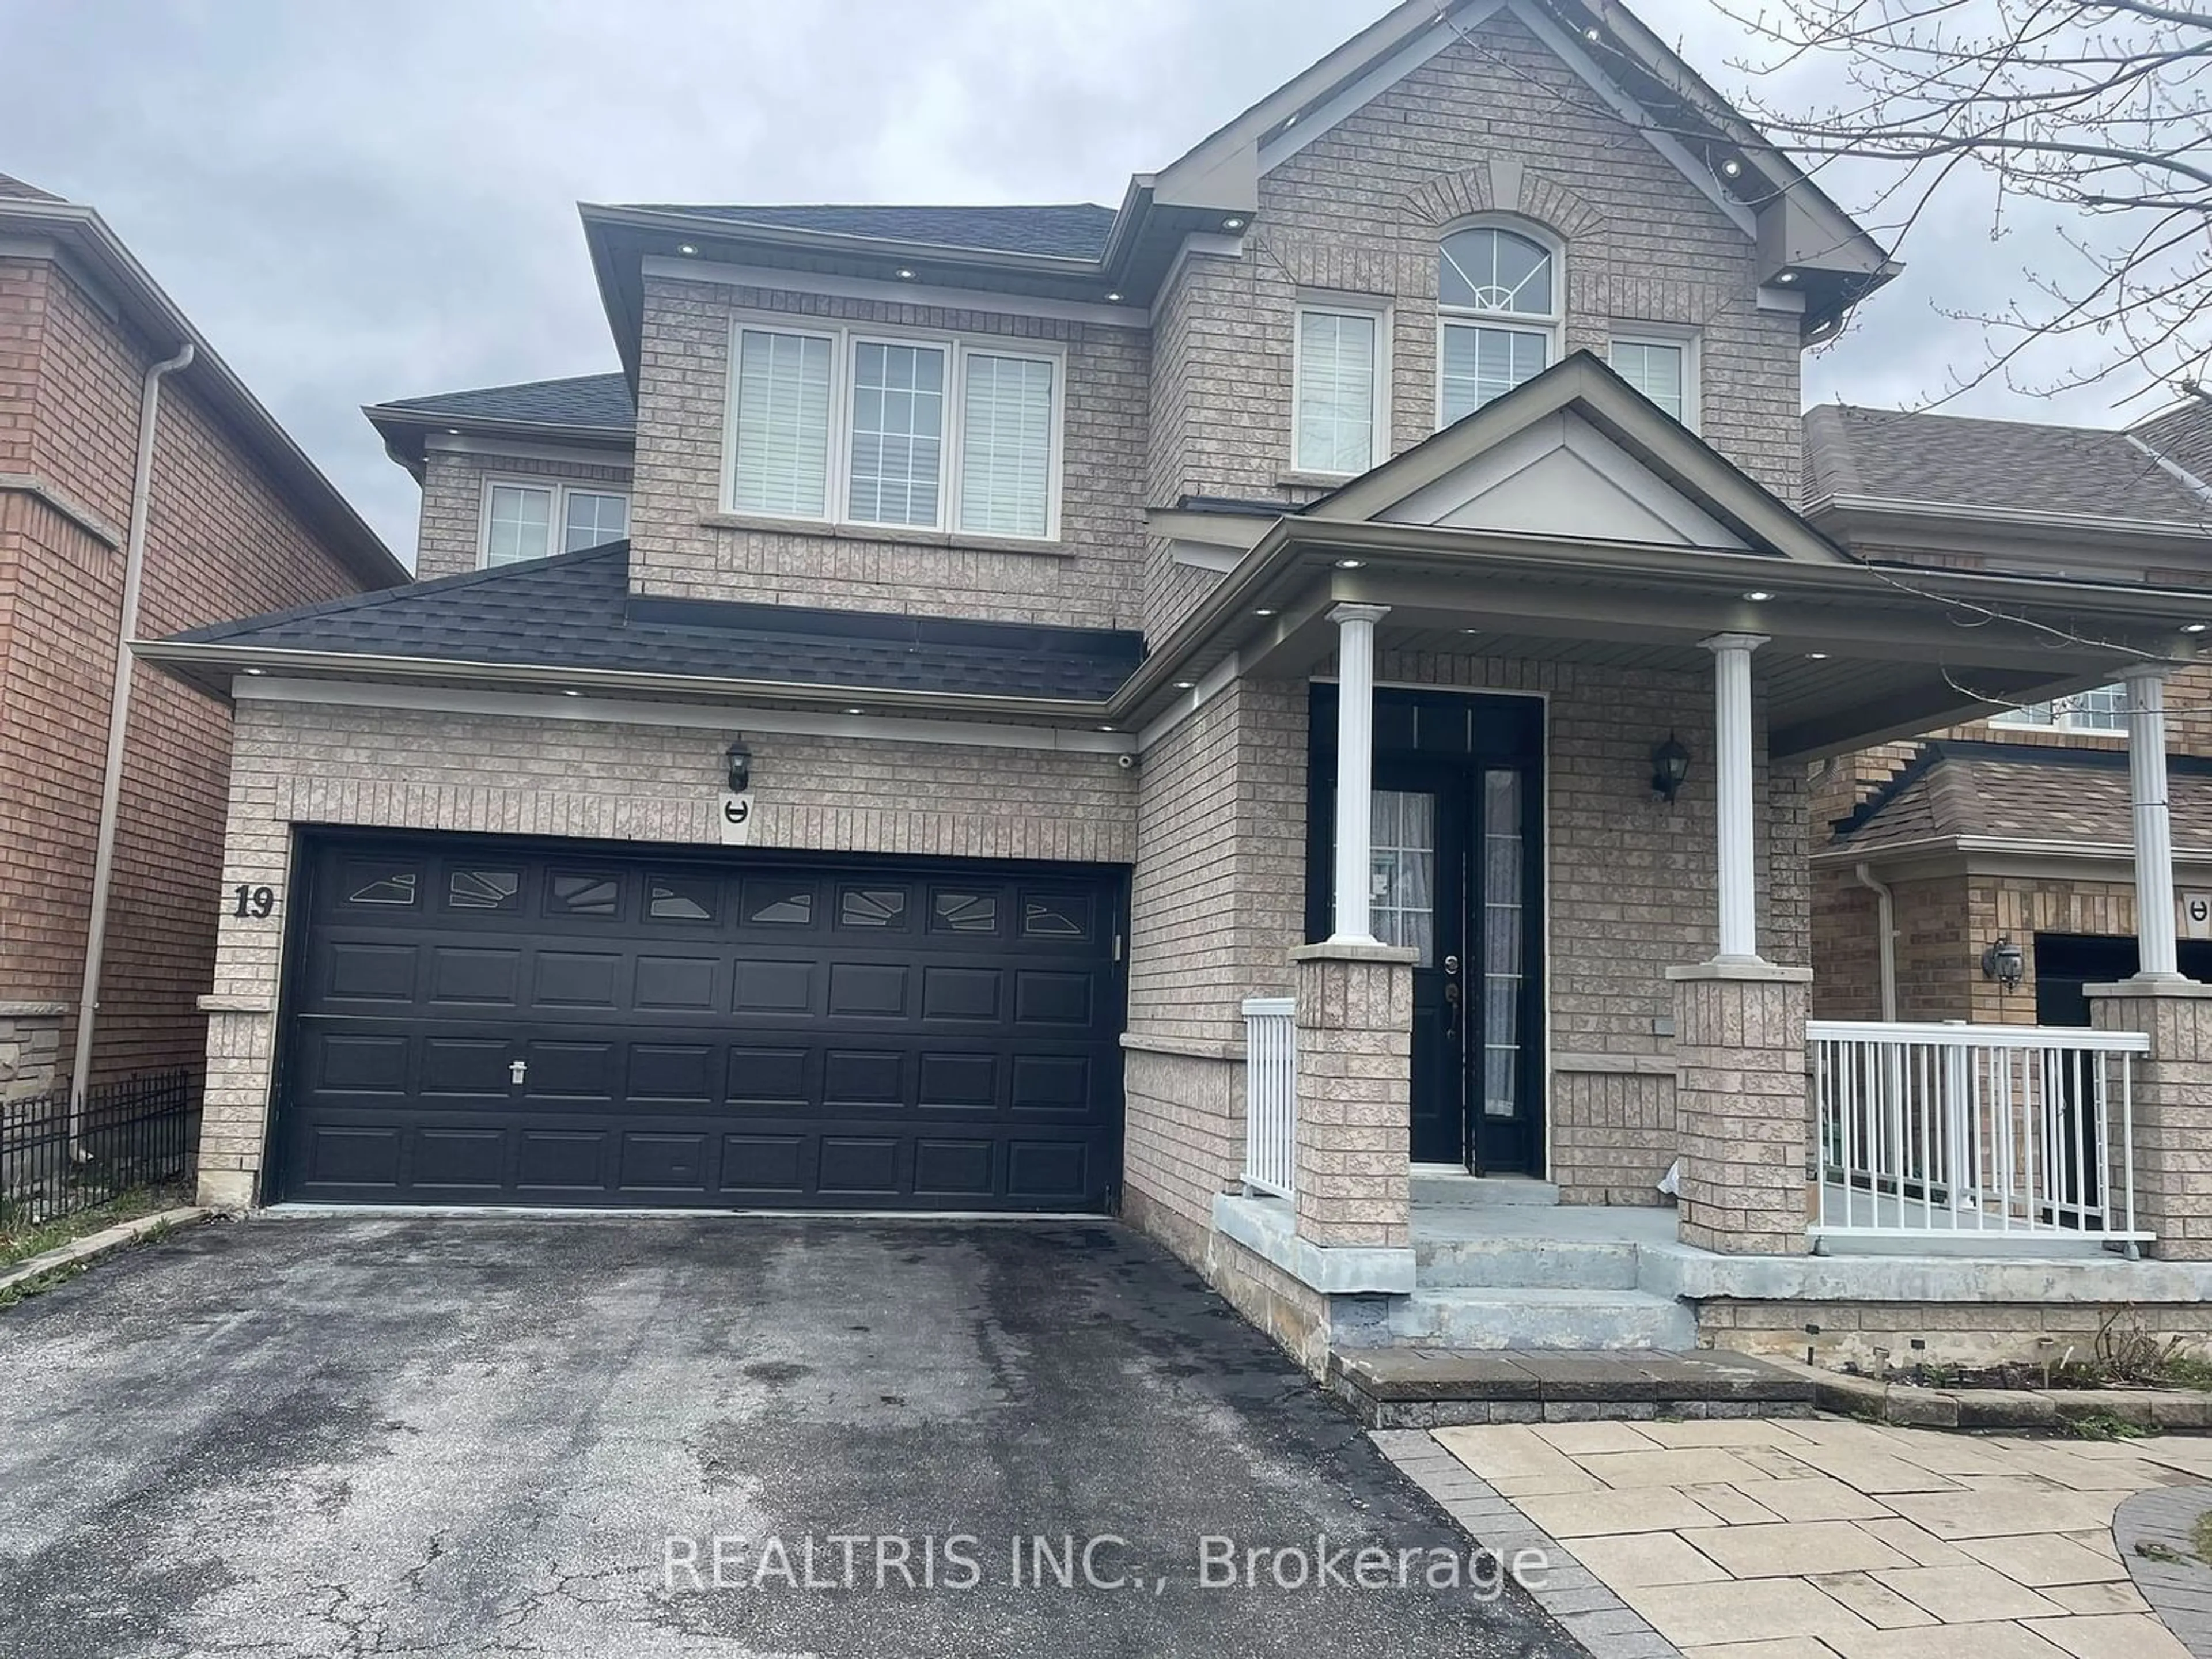 Home with brick exterior material for 19 Fallen Oak St, Toronto Ontario M1X 1V7